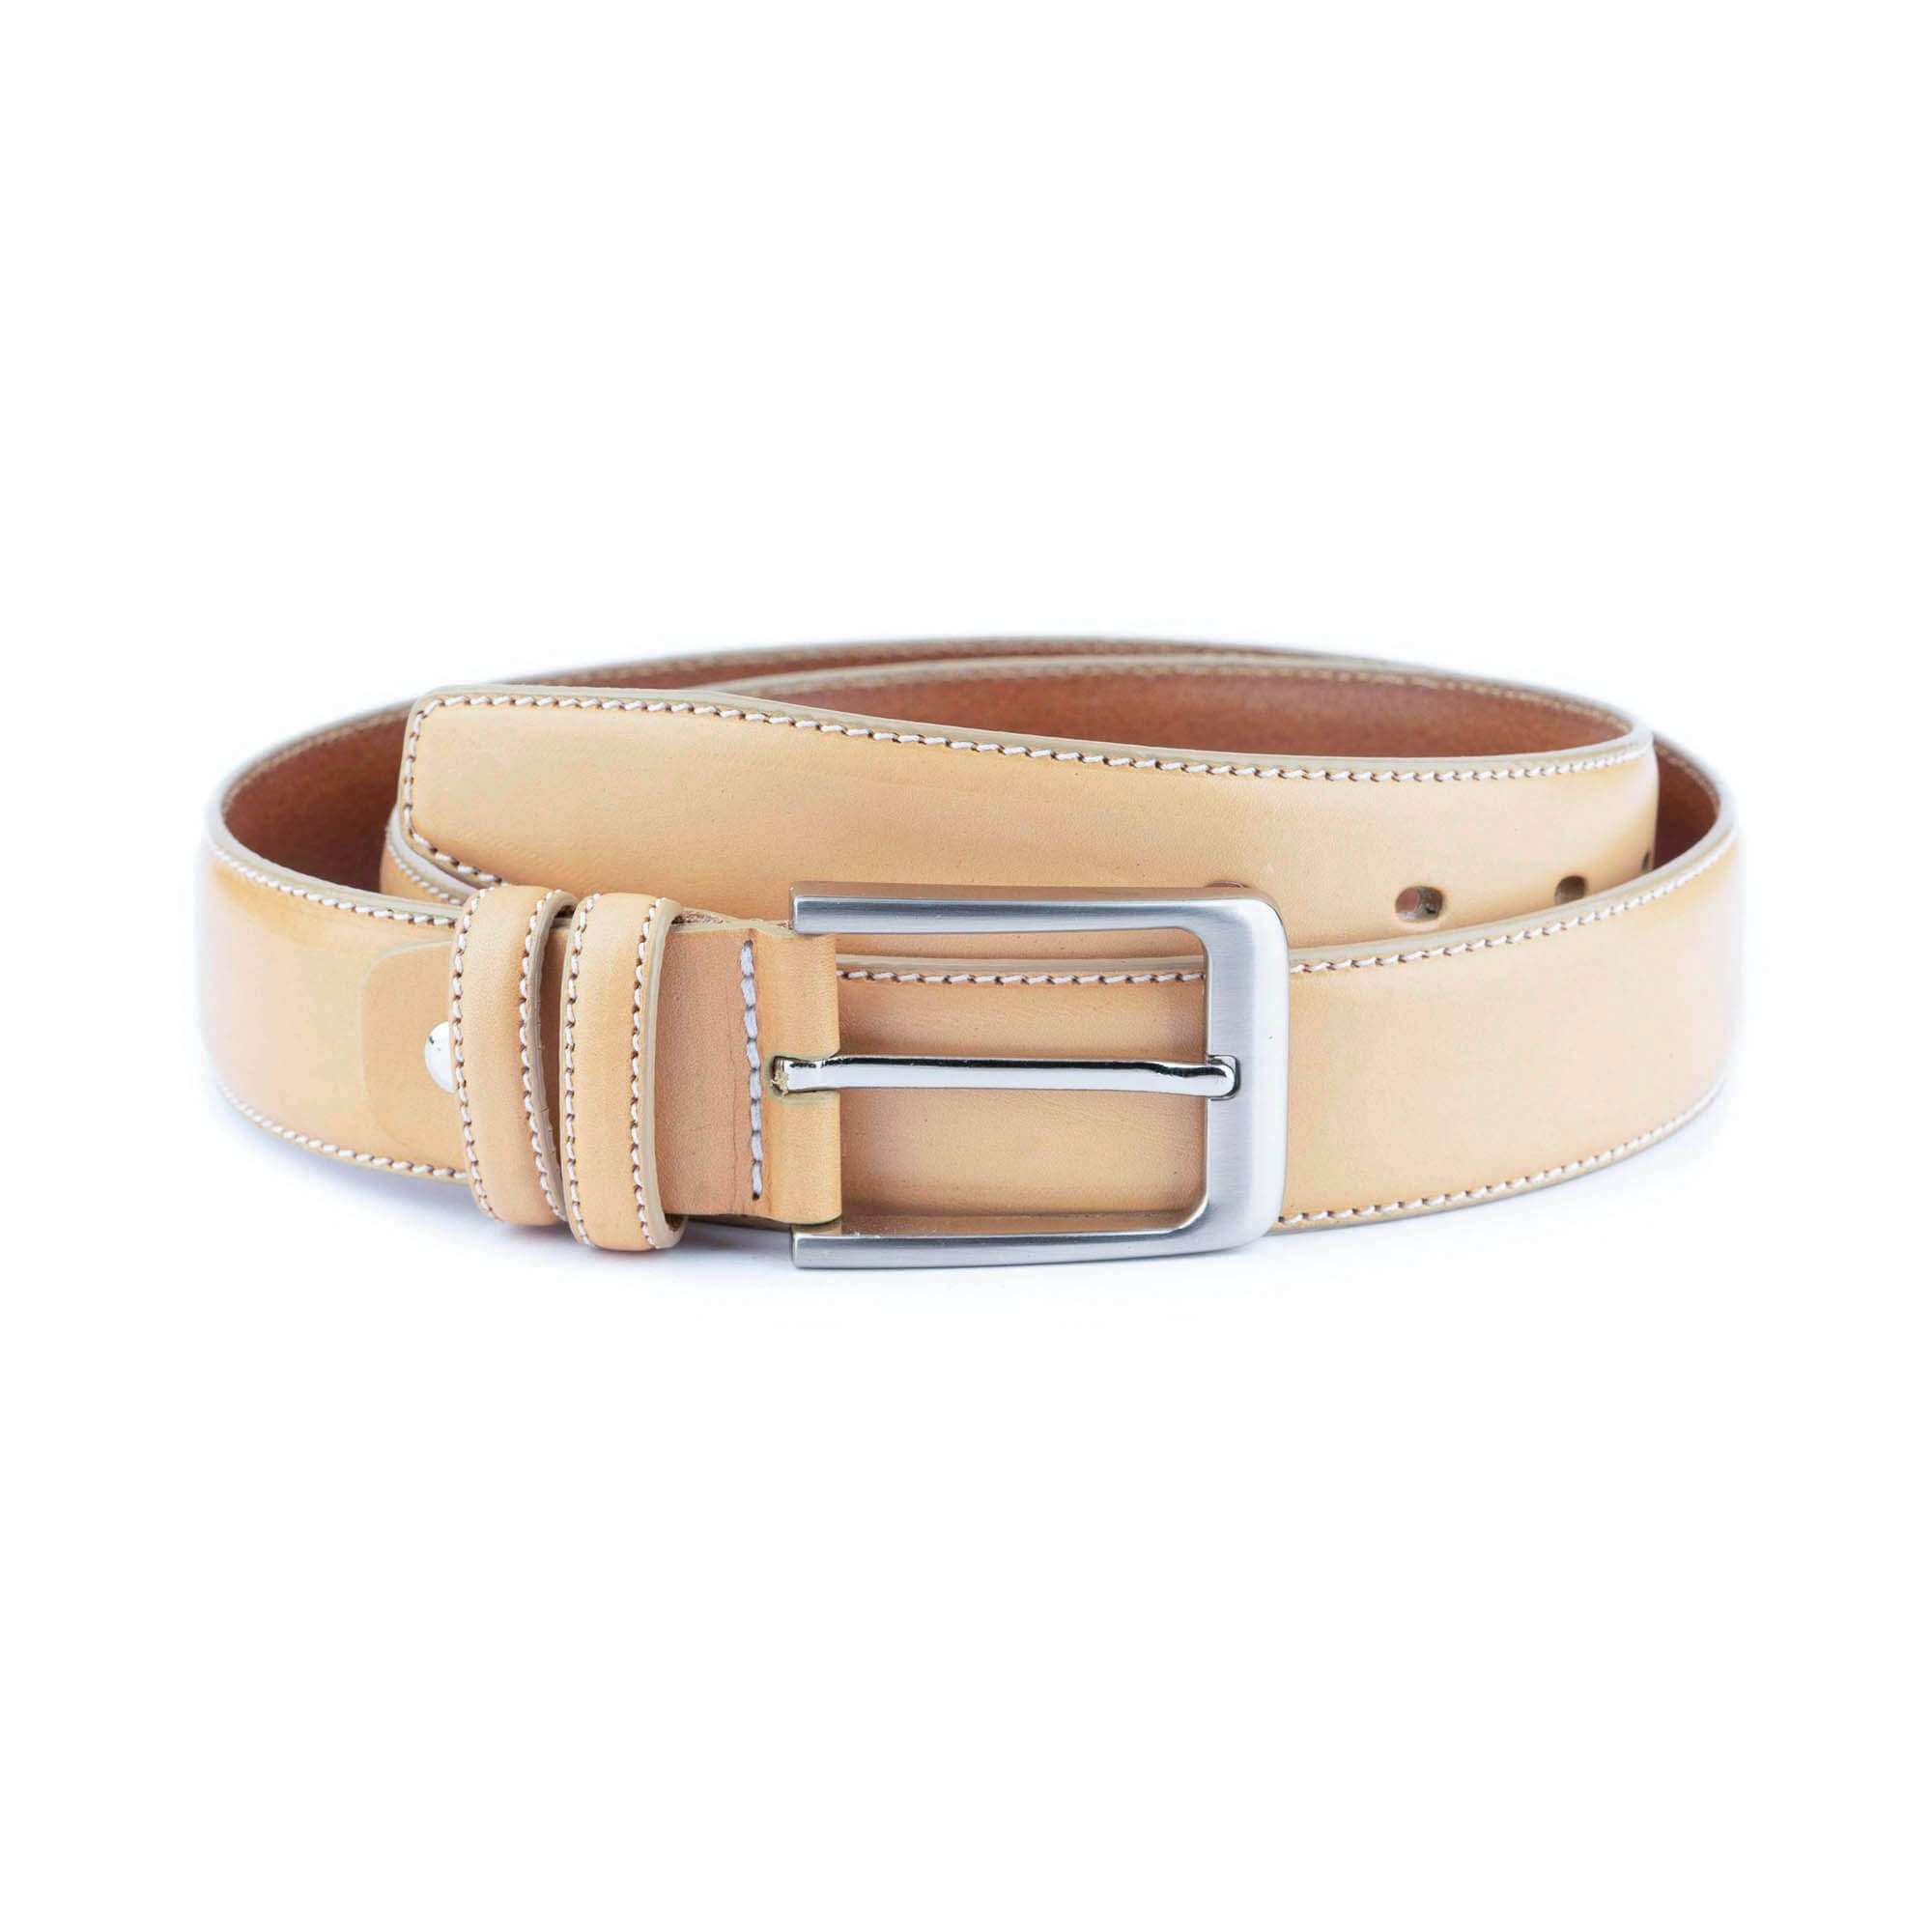 https://leatherbeltsonline.com/wp-content/uploads/2023/01/beige-mens-belt-with-buckle-real-leather-1-28-40-usd35-BEGE3554SVER.jpg